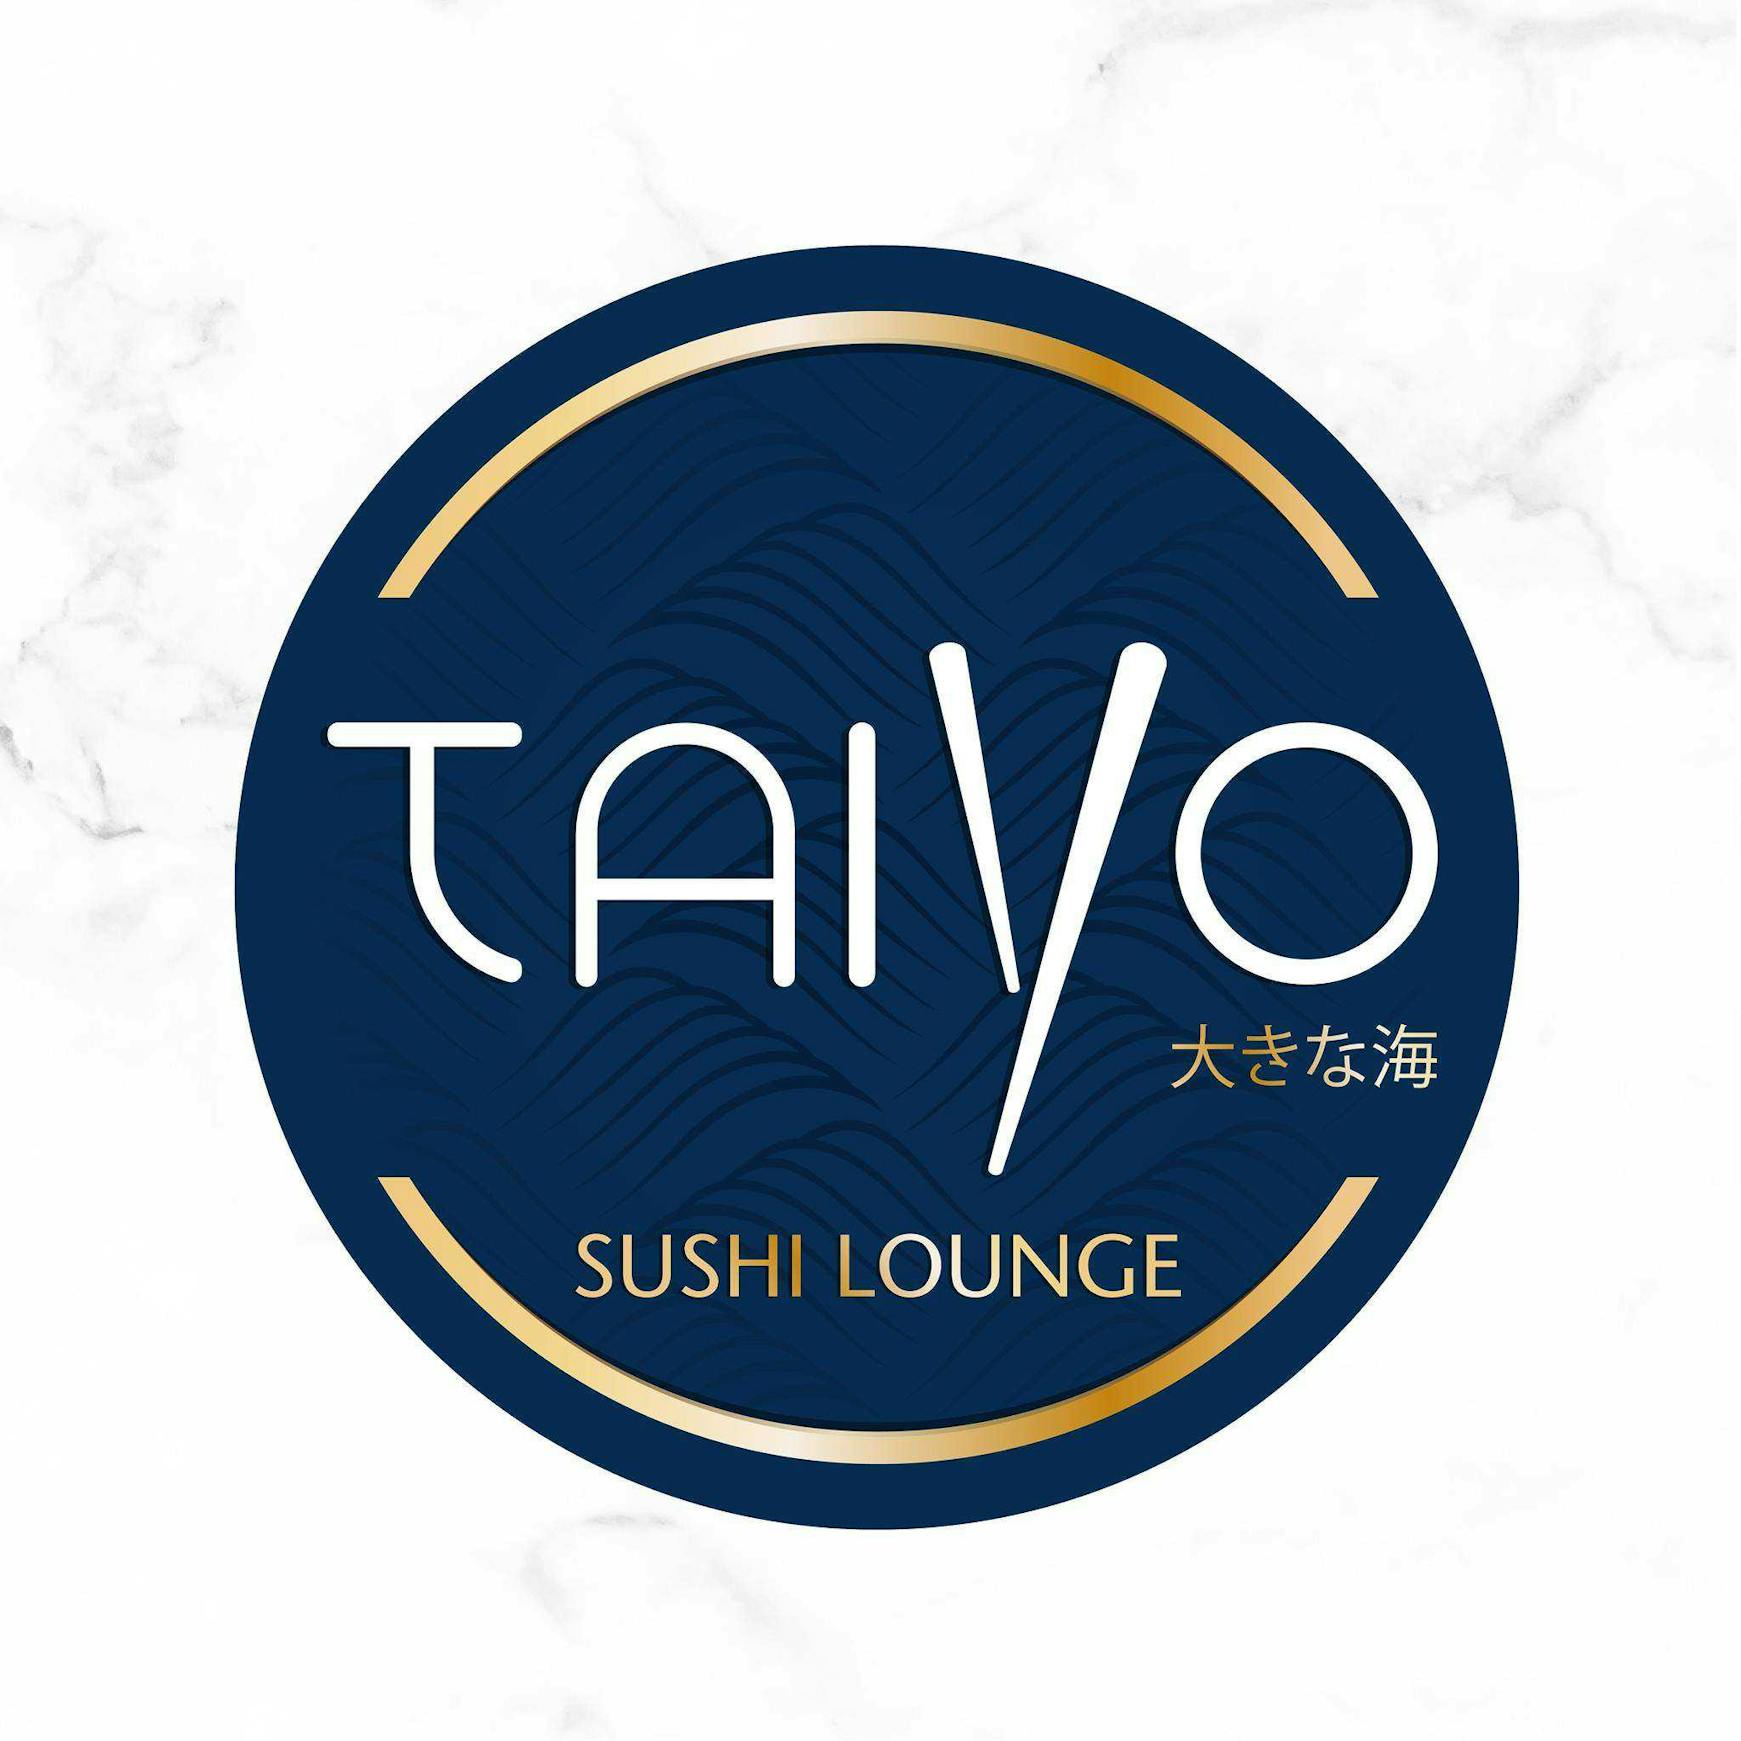 تايو